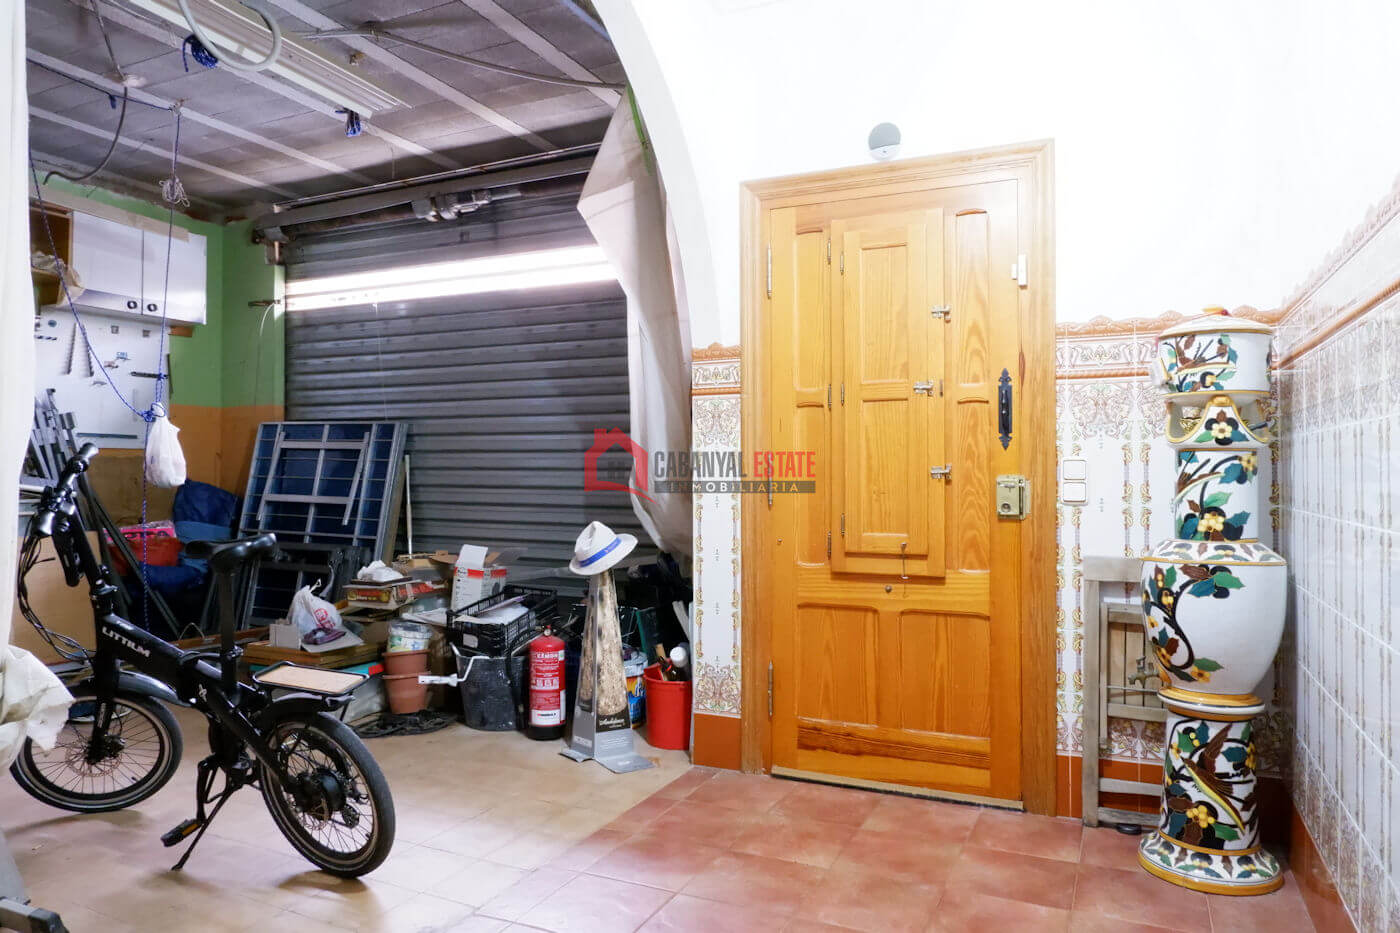 A vendre maison spacieuse avec garage à El Cabanyal